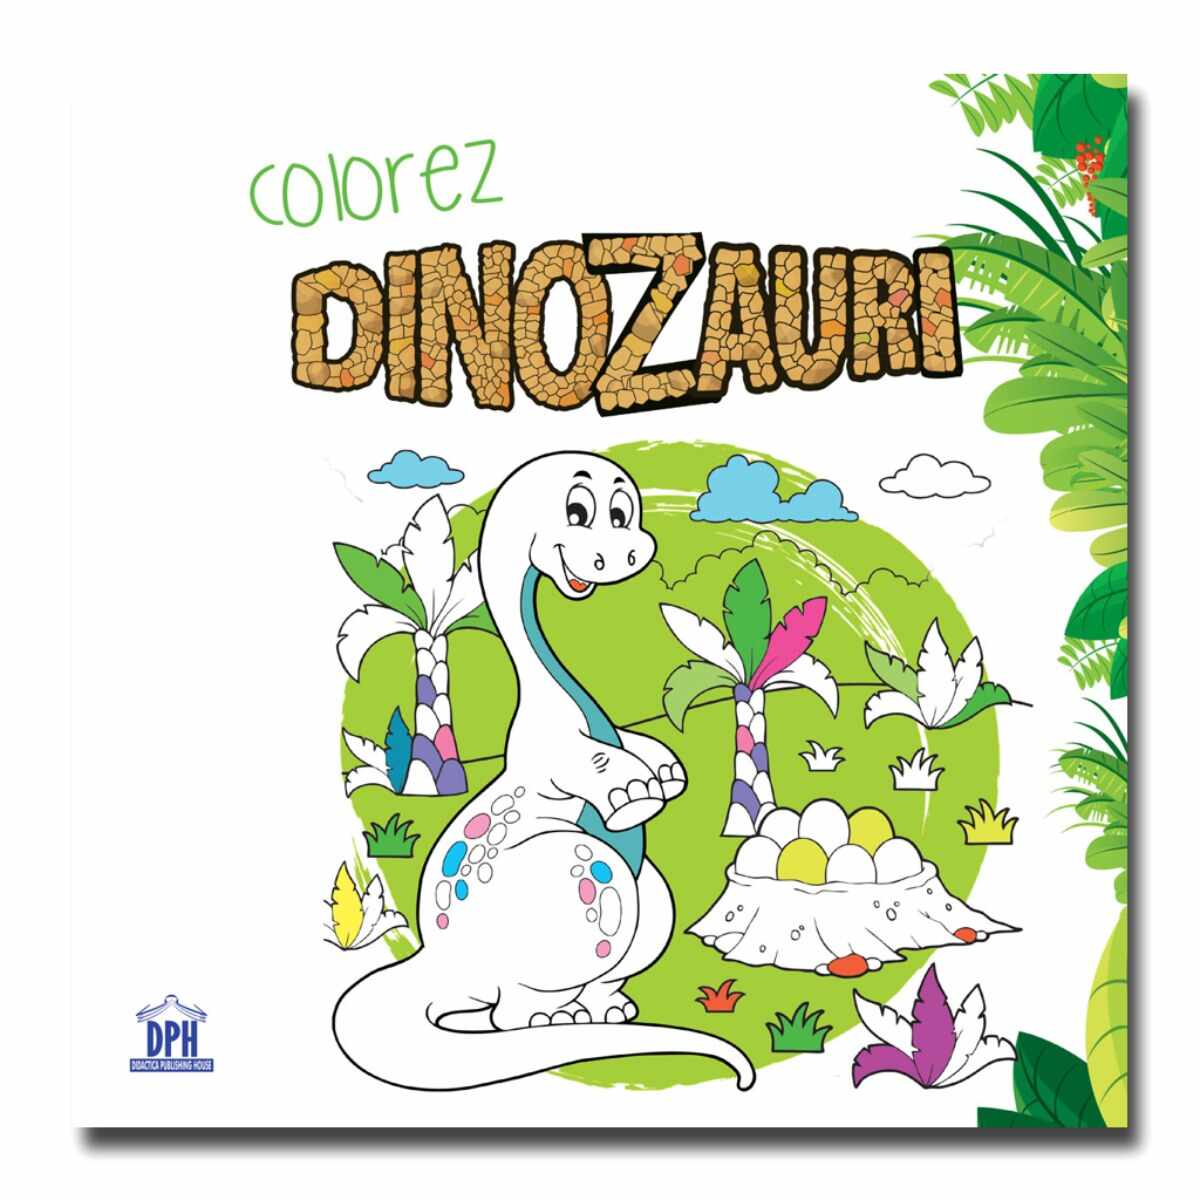 Colorez dinozauri, carte de colorat